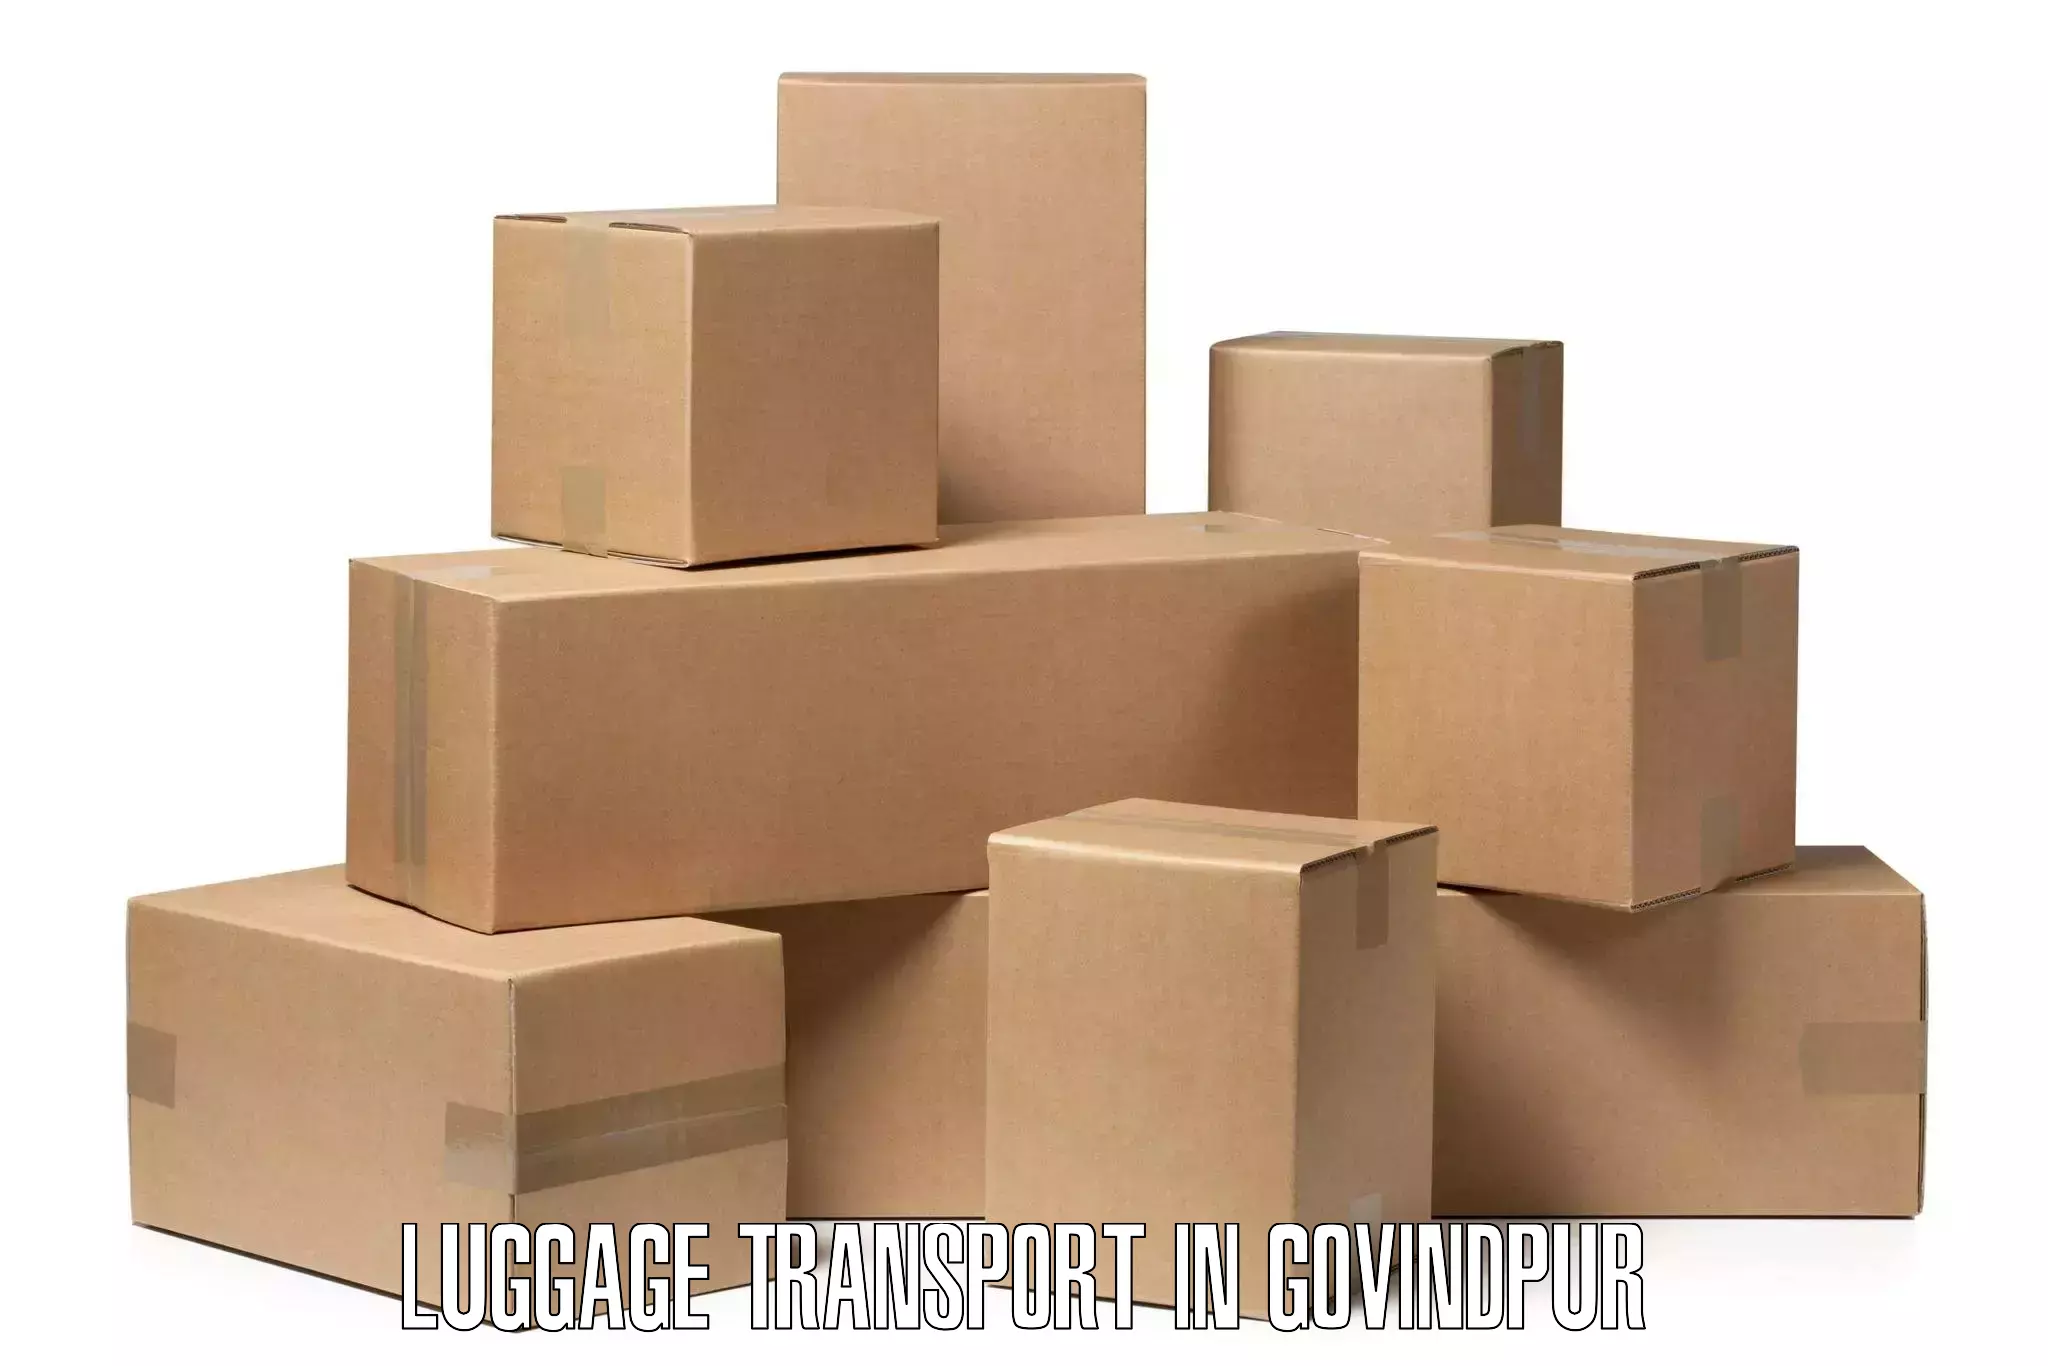 Quick luggage shipment in Govindpur